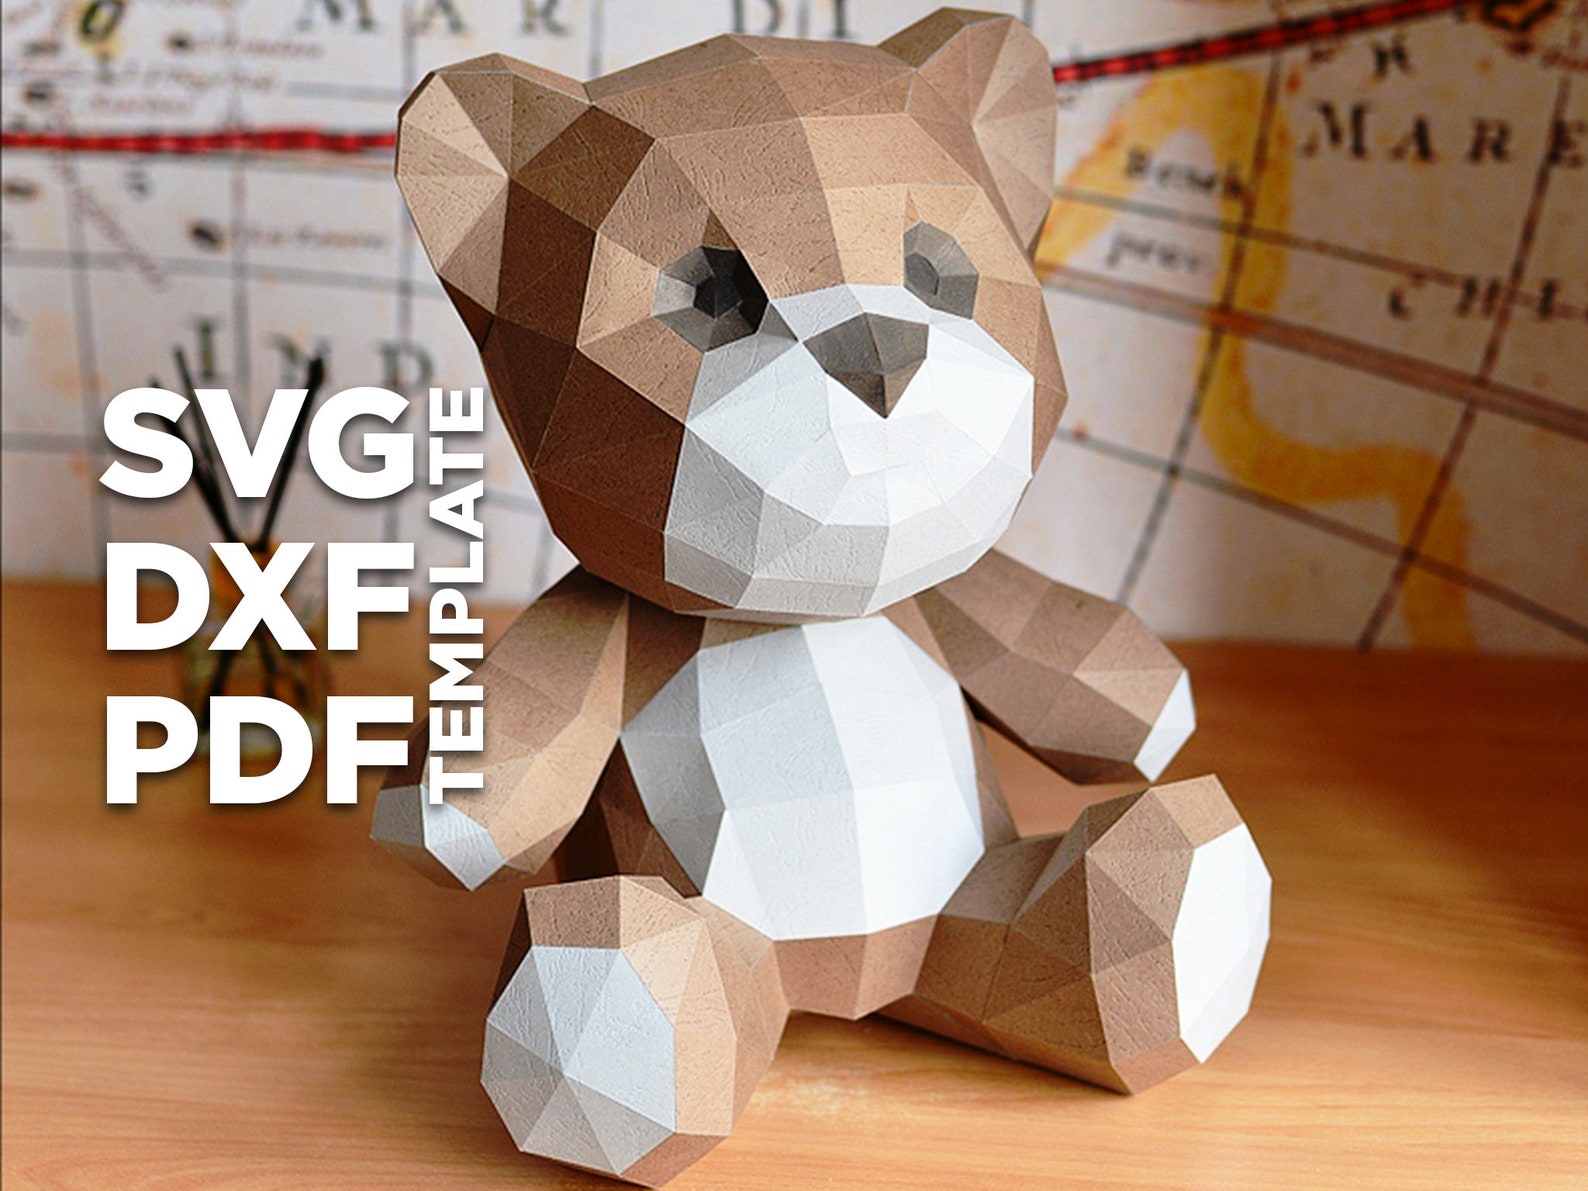 Teddy Bear Papercraft 3D SVG DXF Pdf DIY low poly paper crafts | Etsy